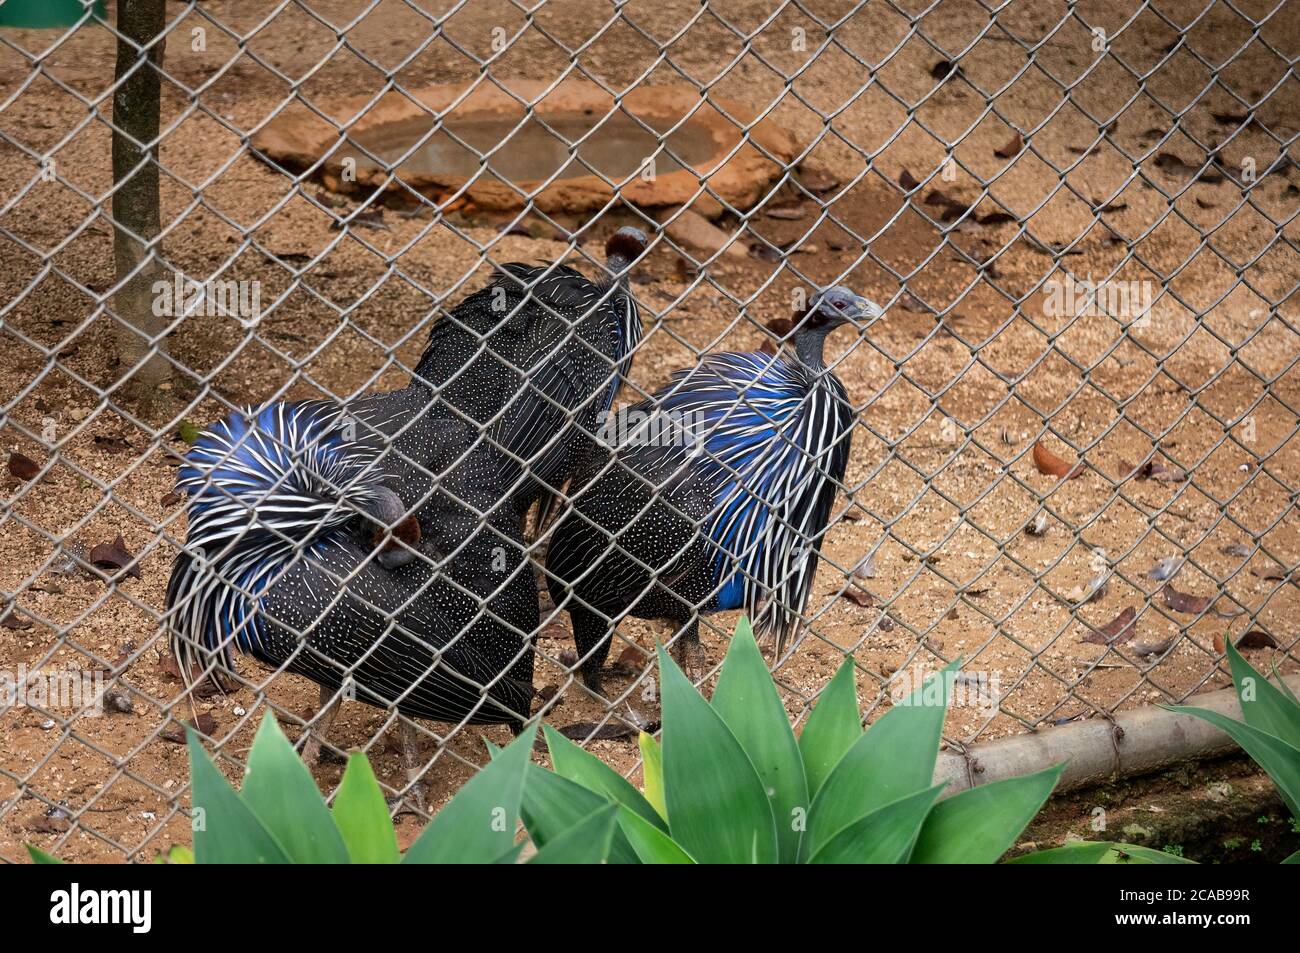 Un groupe de Guineafhid Vulturine (Acryllium vulturinum - la plus grande espèce de guineafhid) à l'intérieur de sa cage dans le jardin du zoo de Belo Horizonte. Banque D'Images